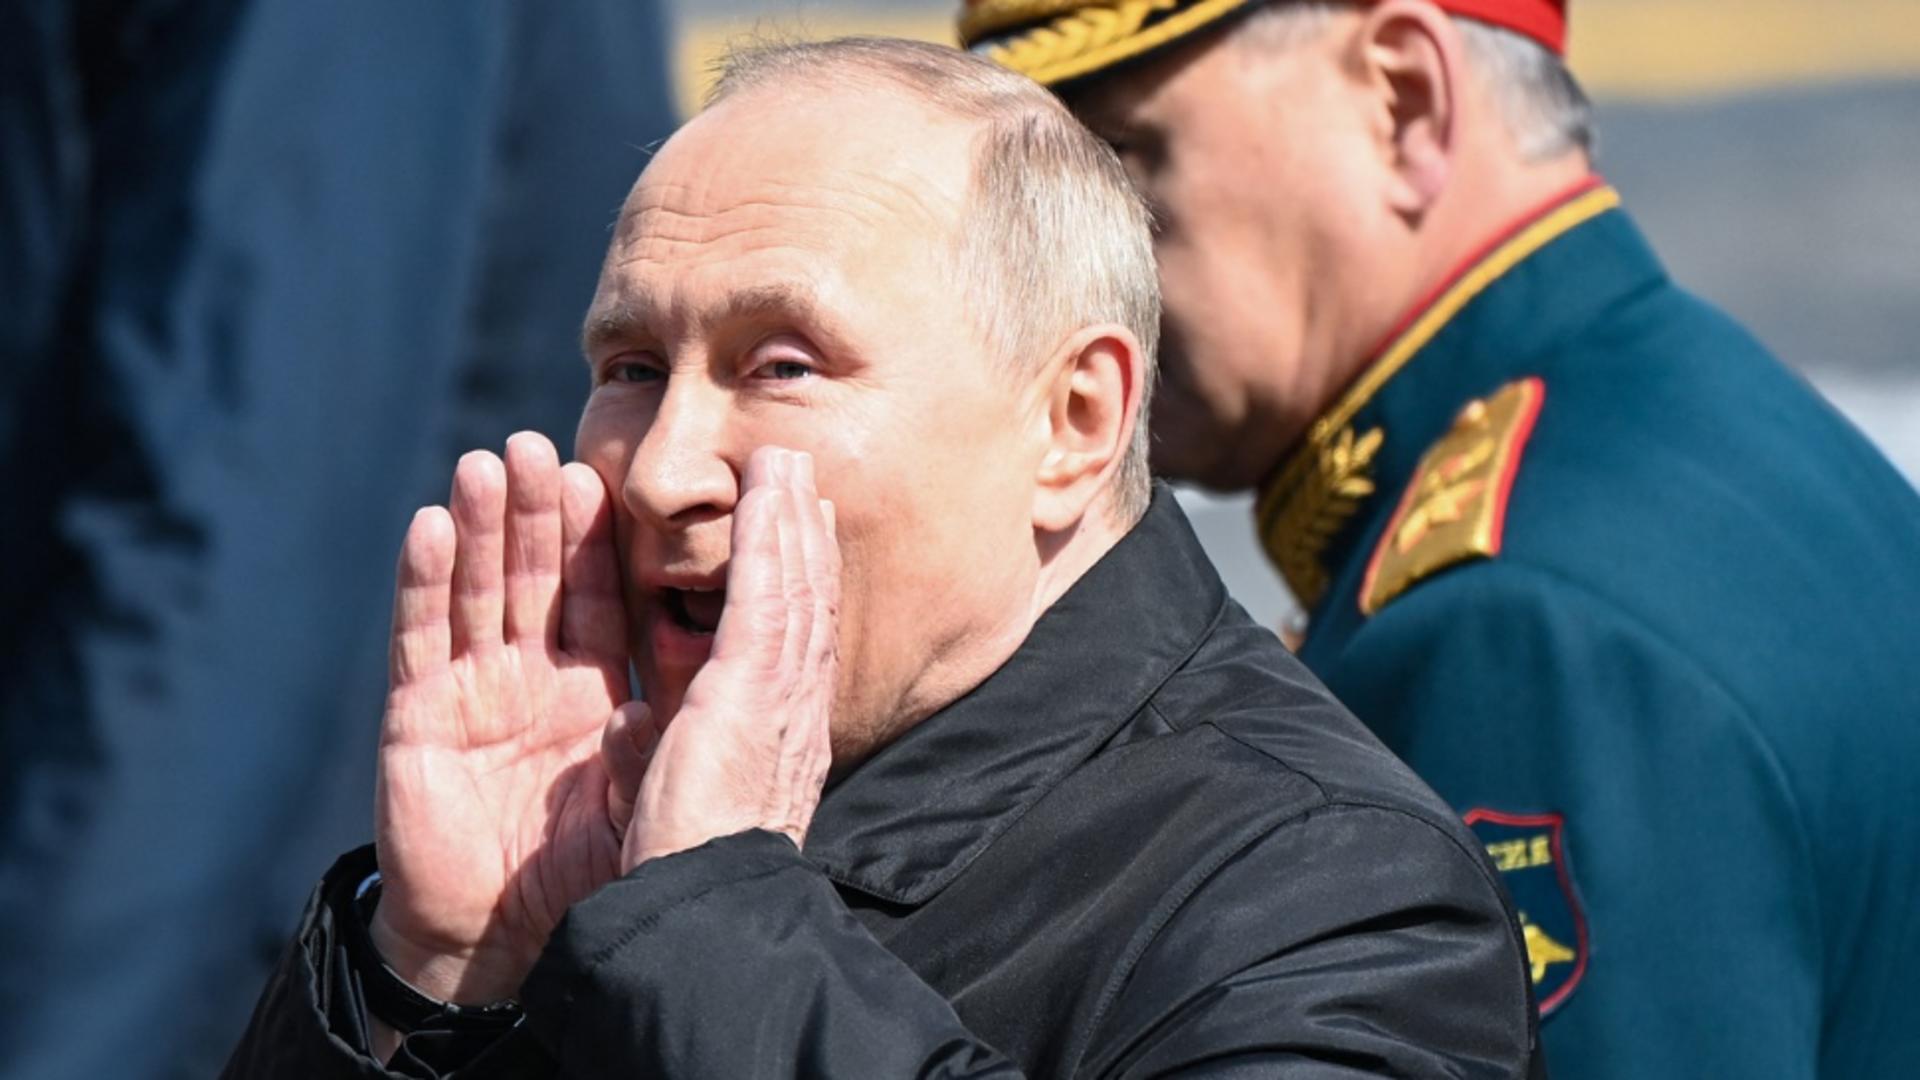 Sancțiuni aproape fără efect. Rusia aproape că și-a dublat bugetul pentru cheltuiei militare de la anul